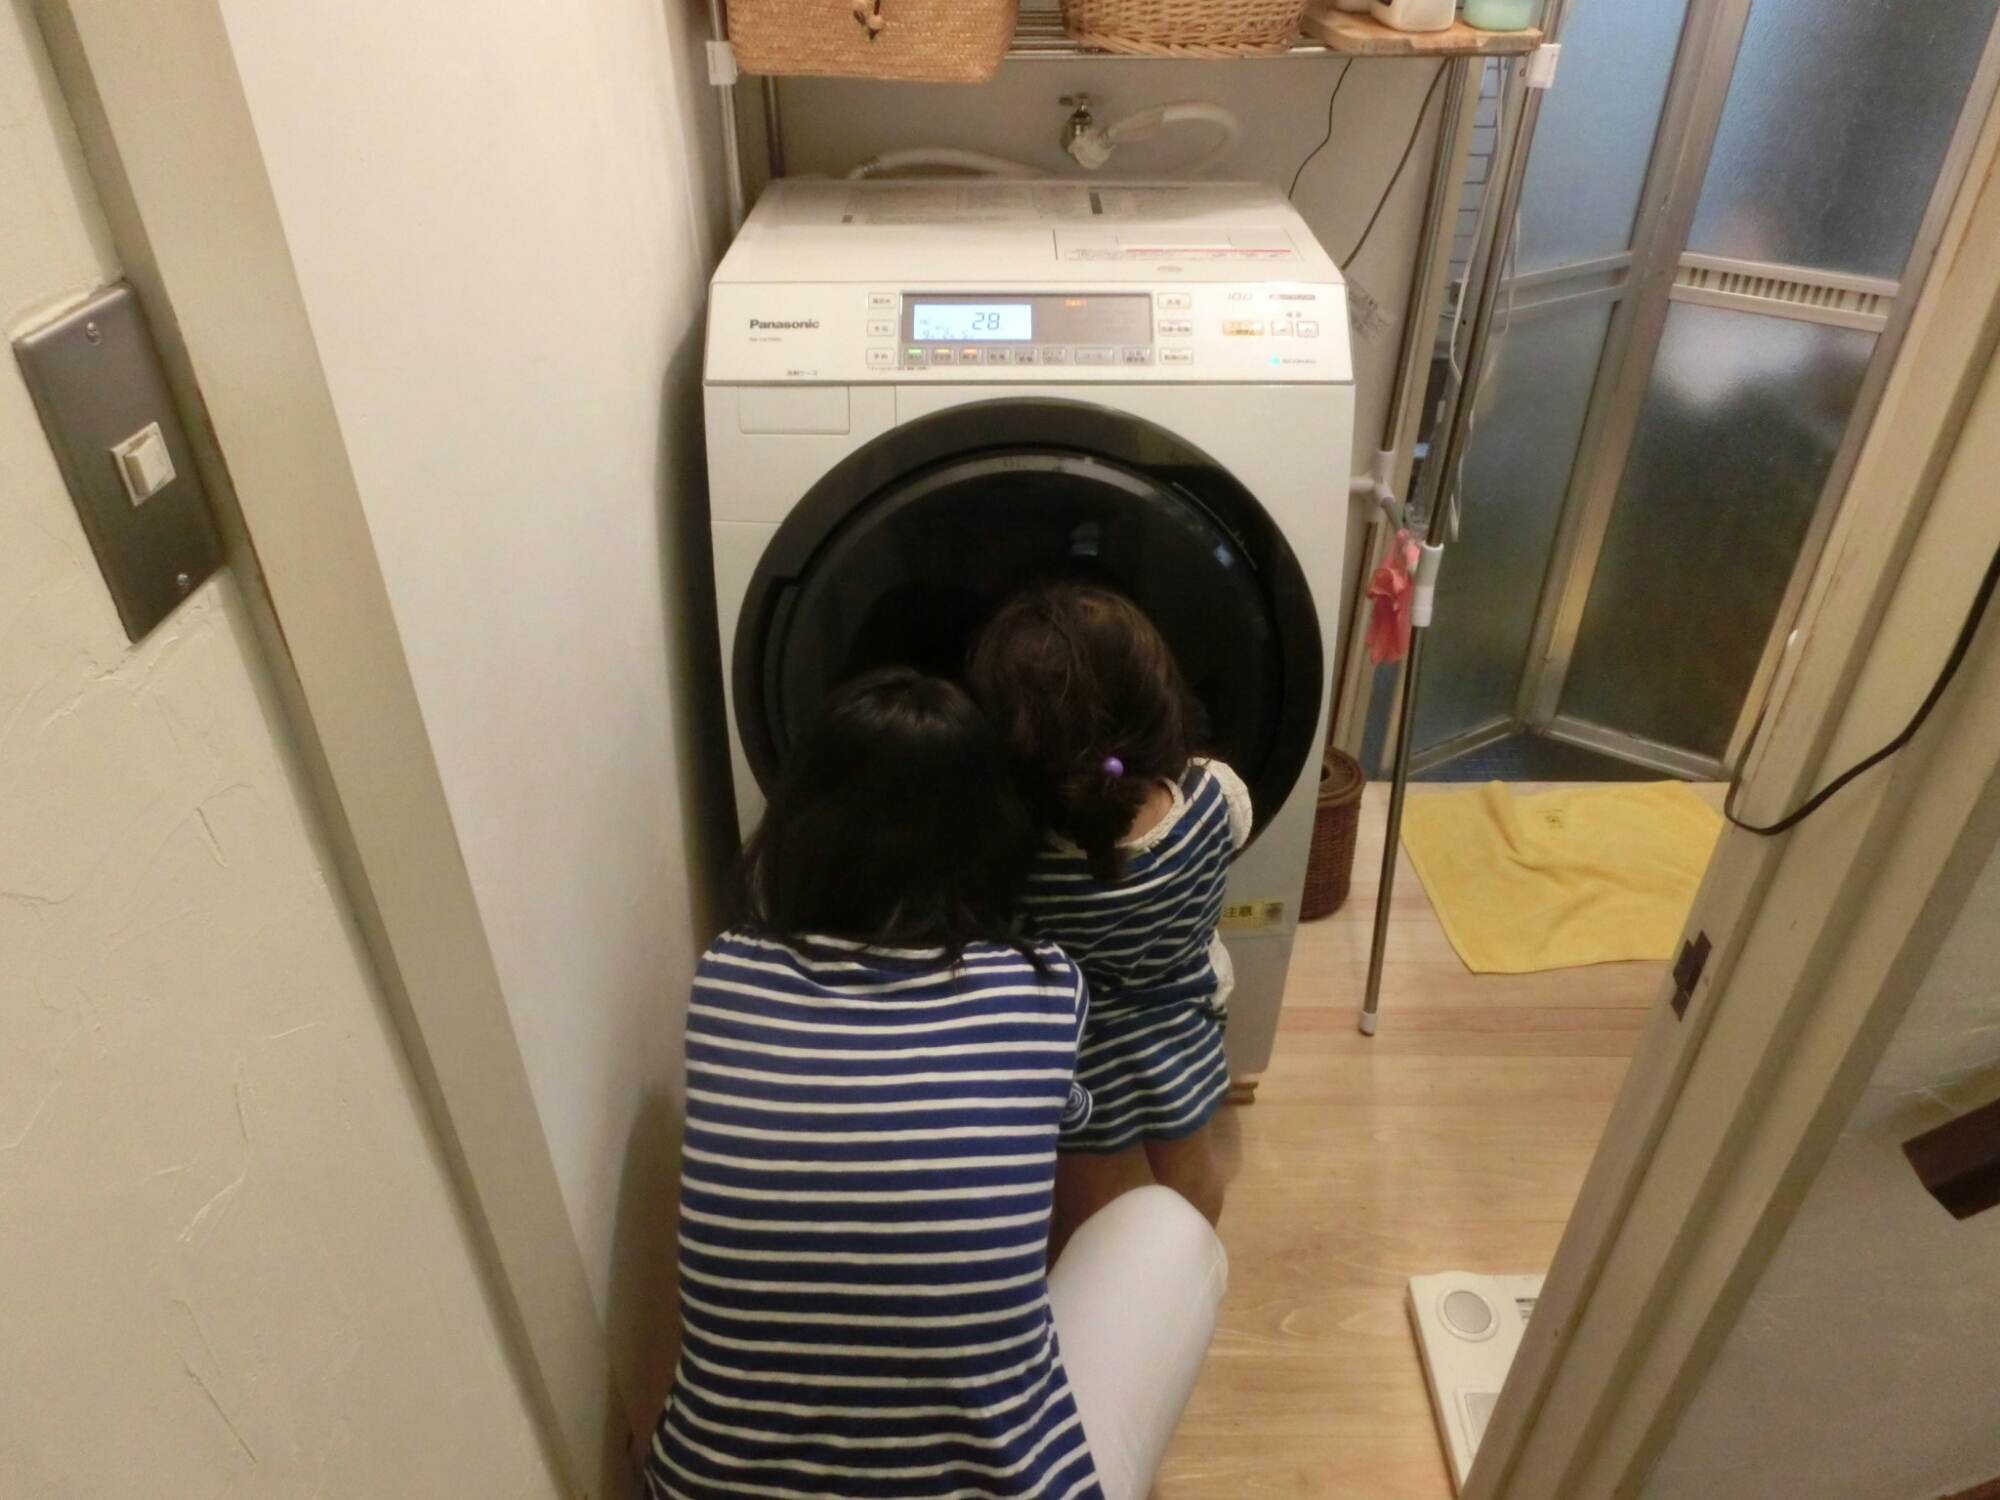 生活家電 洗濯機 ドラム式洗濯機(NA-VX7500)が特価で買えました。 | 30代 農家を目指す 